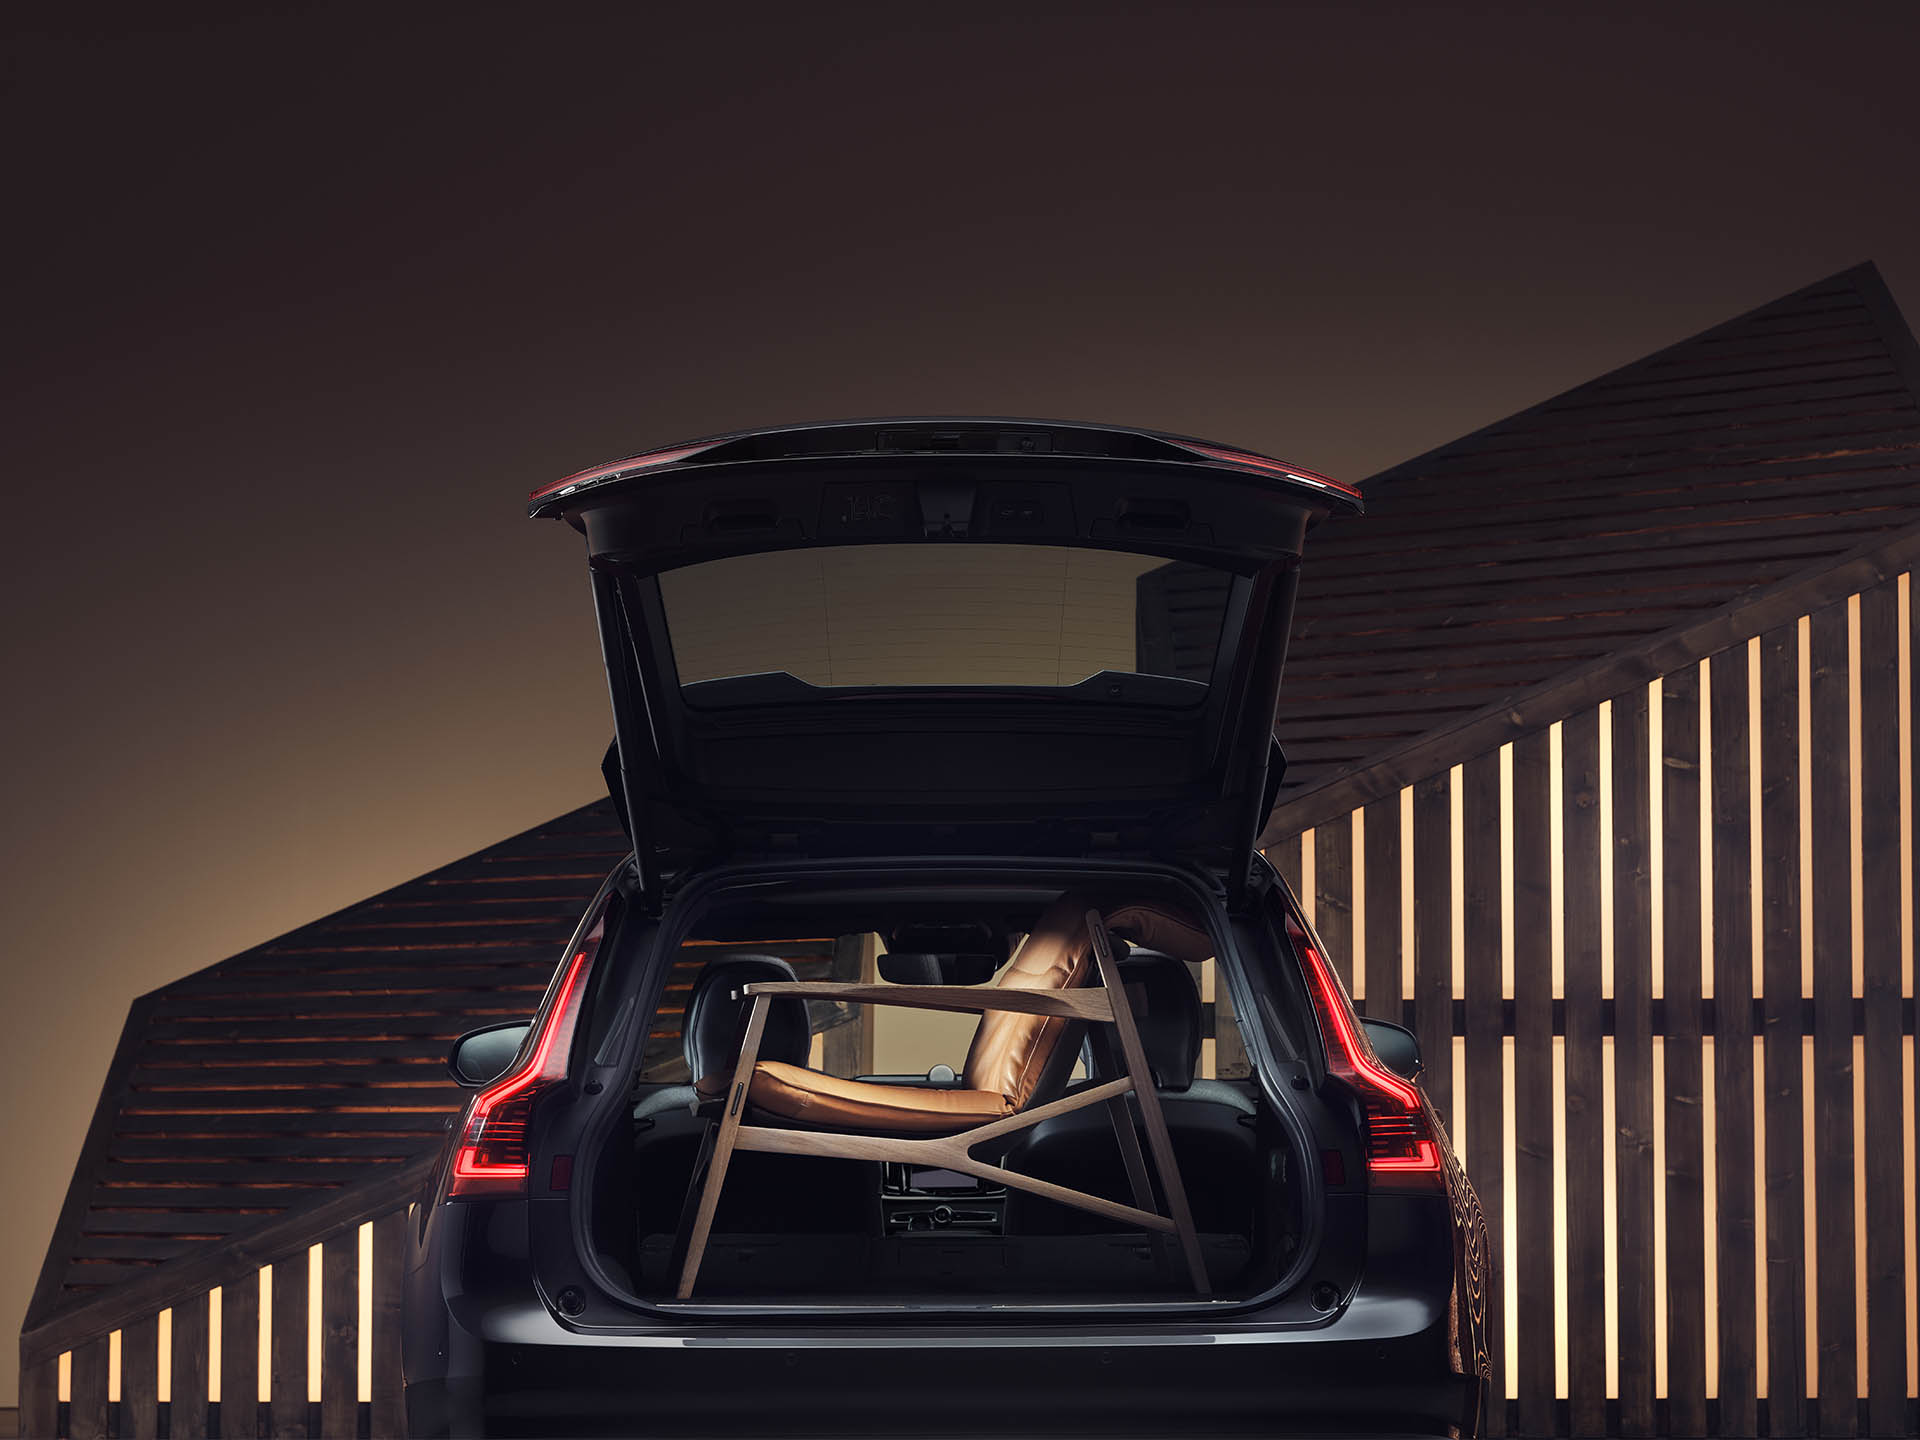 El espacio del maletero de un Volvo familiar se completa con un elegante sillón marrón